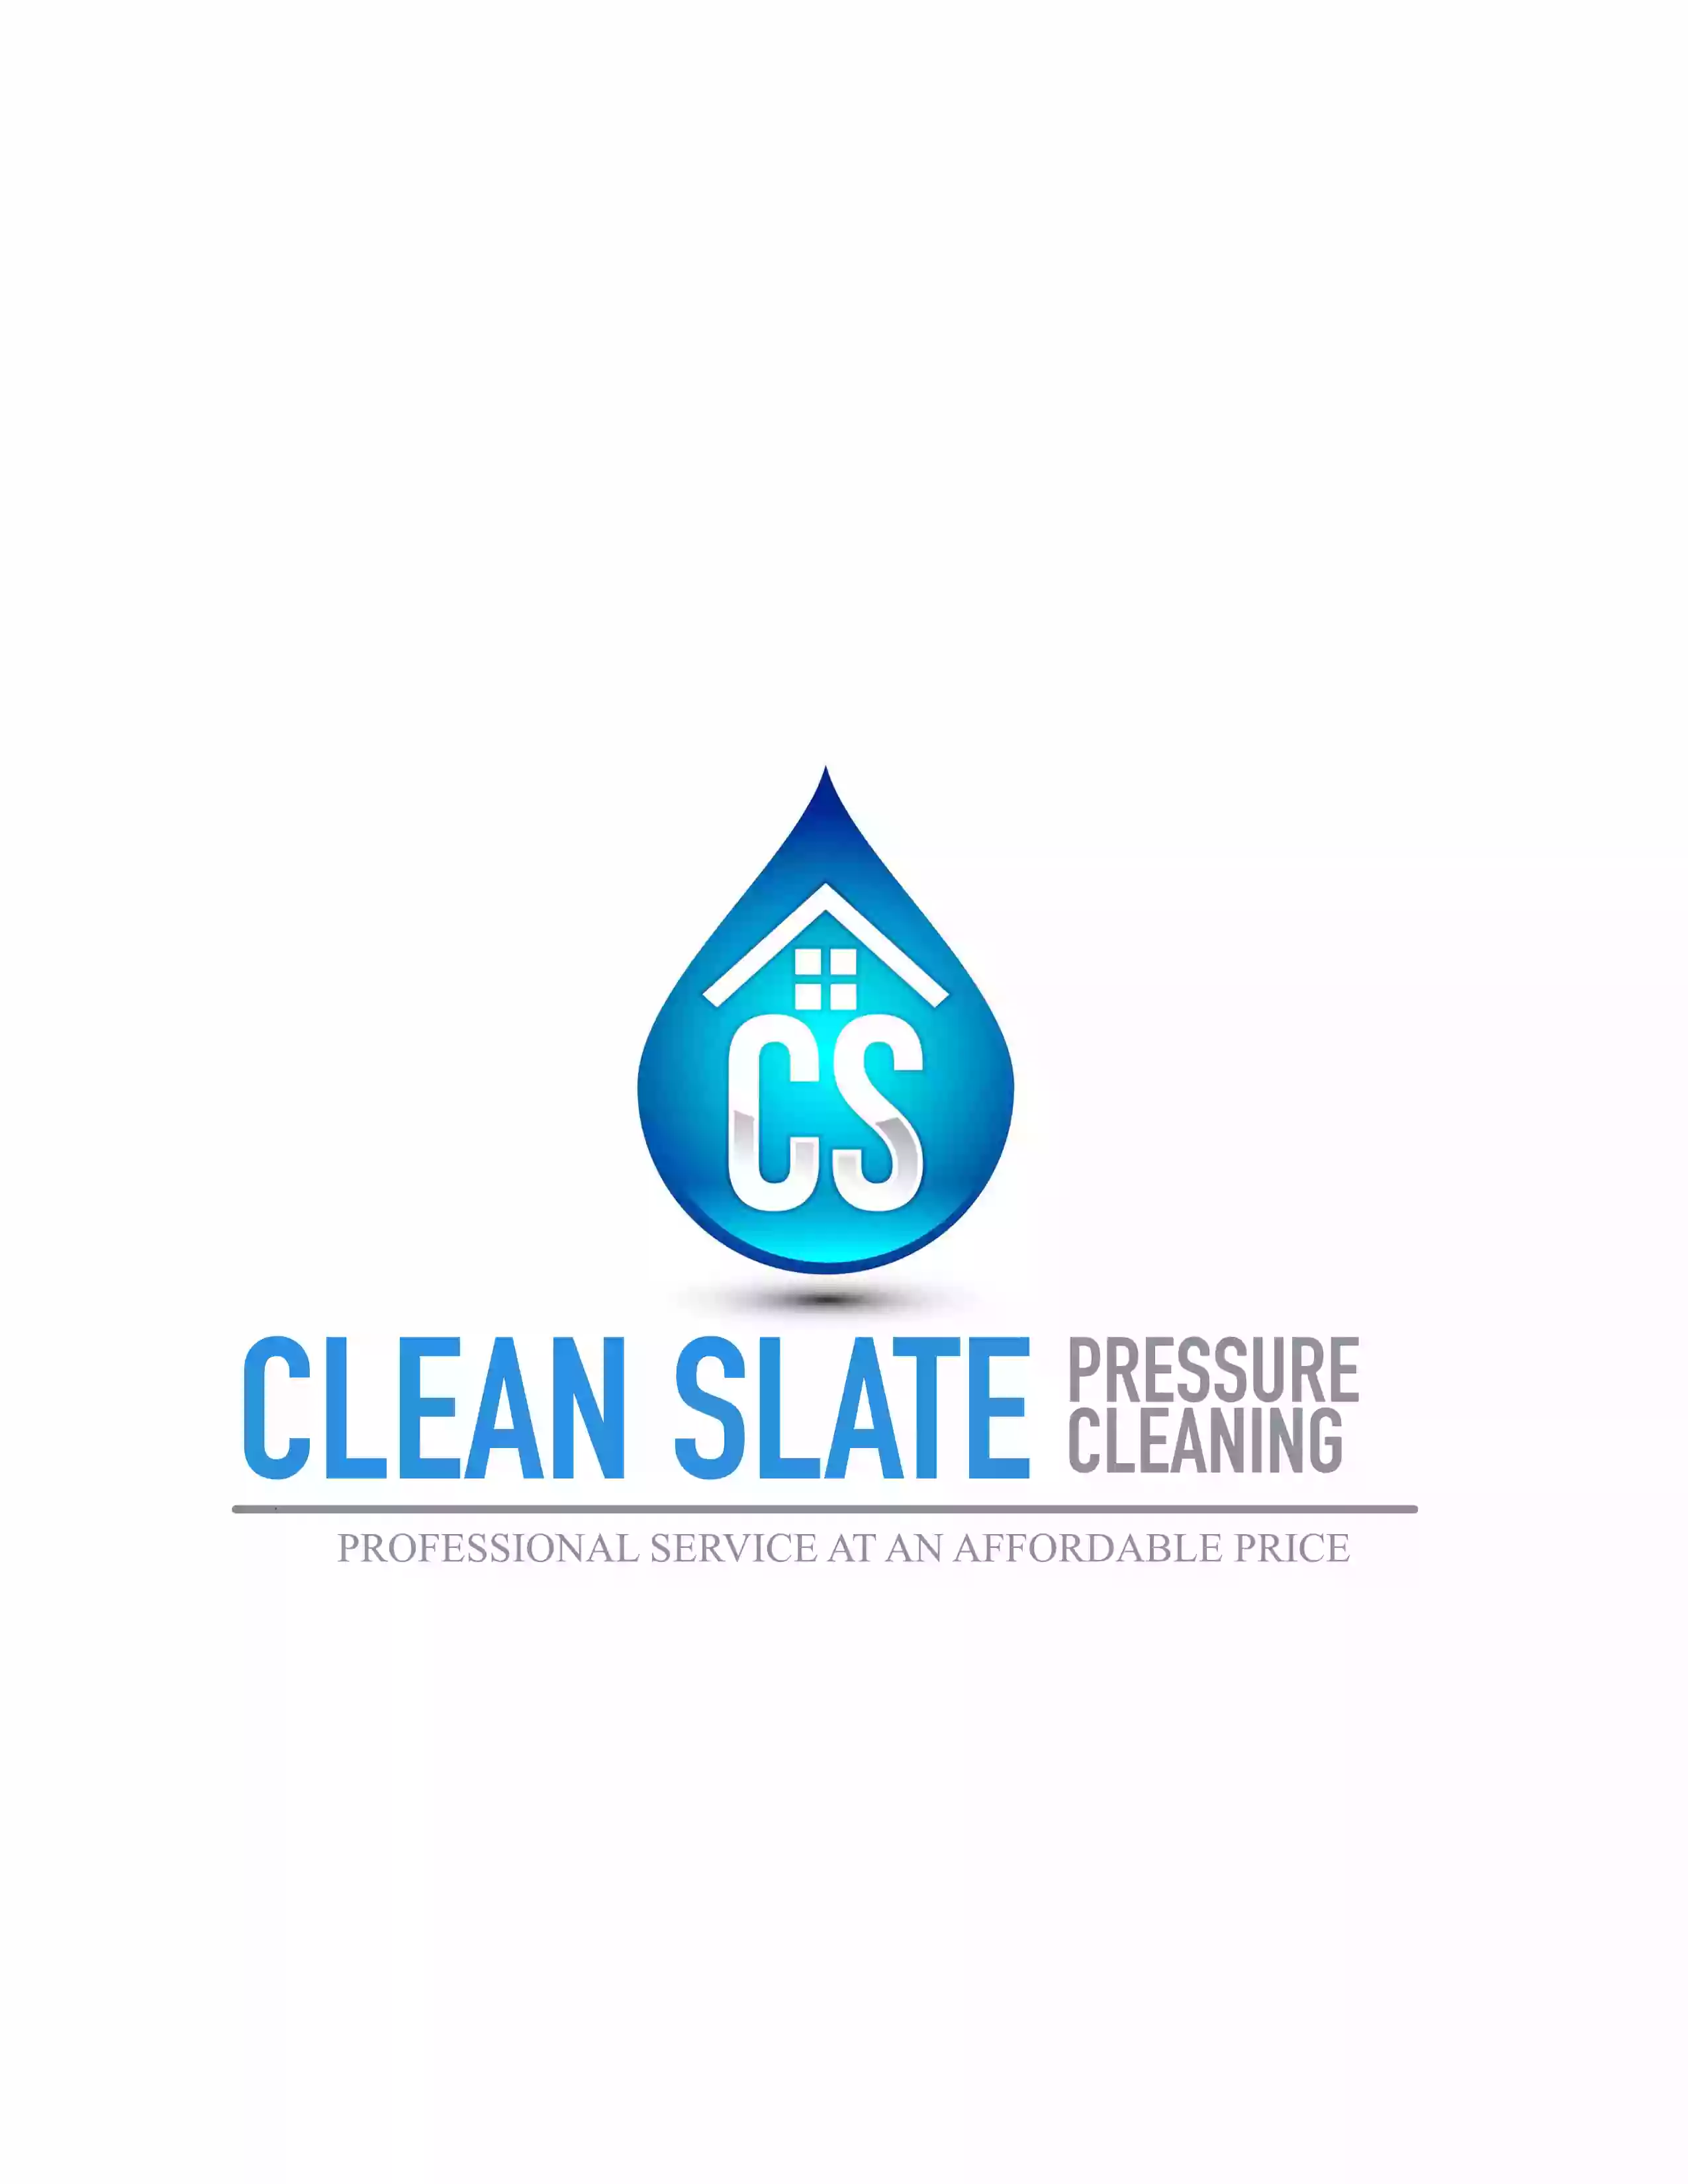 Clean Slate Pressure Cleaning, LLC